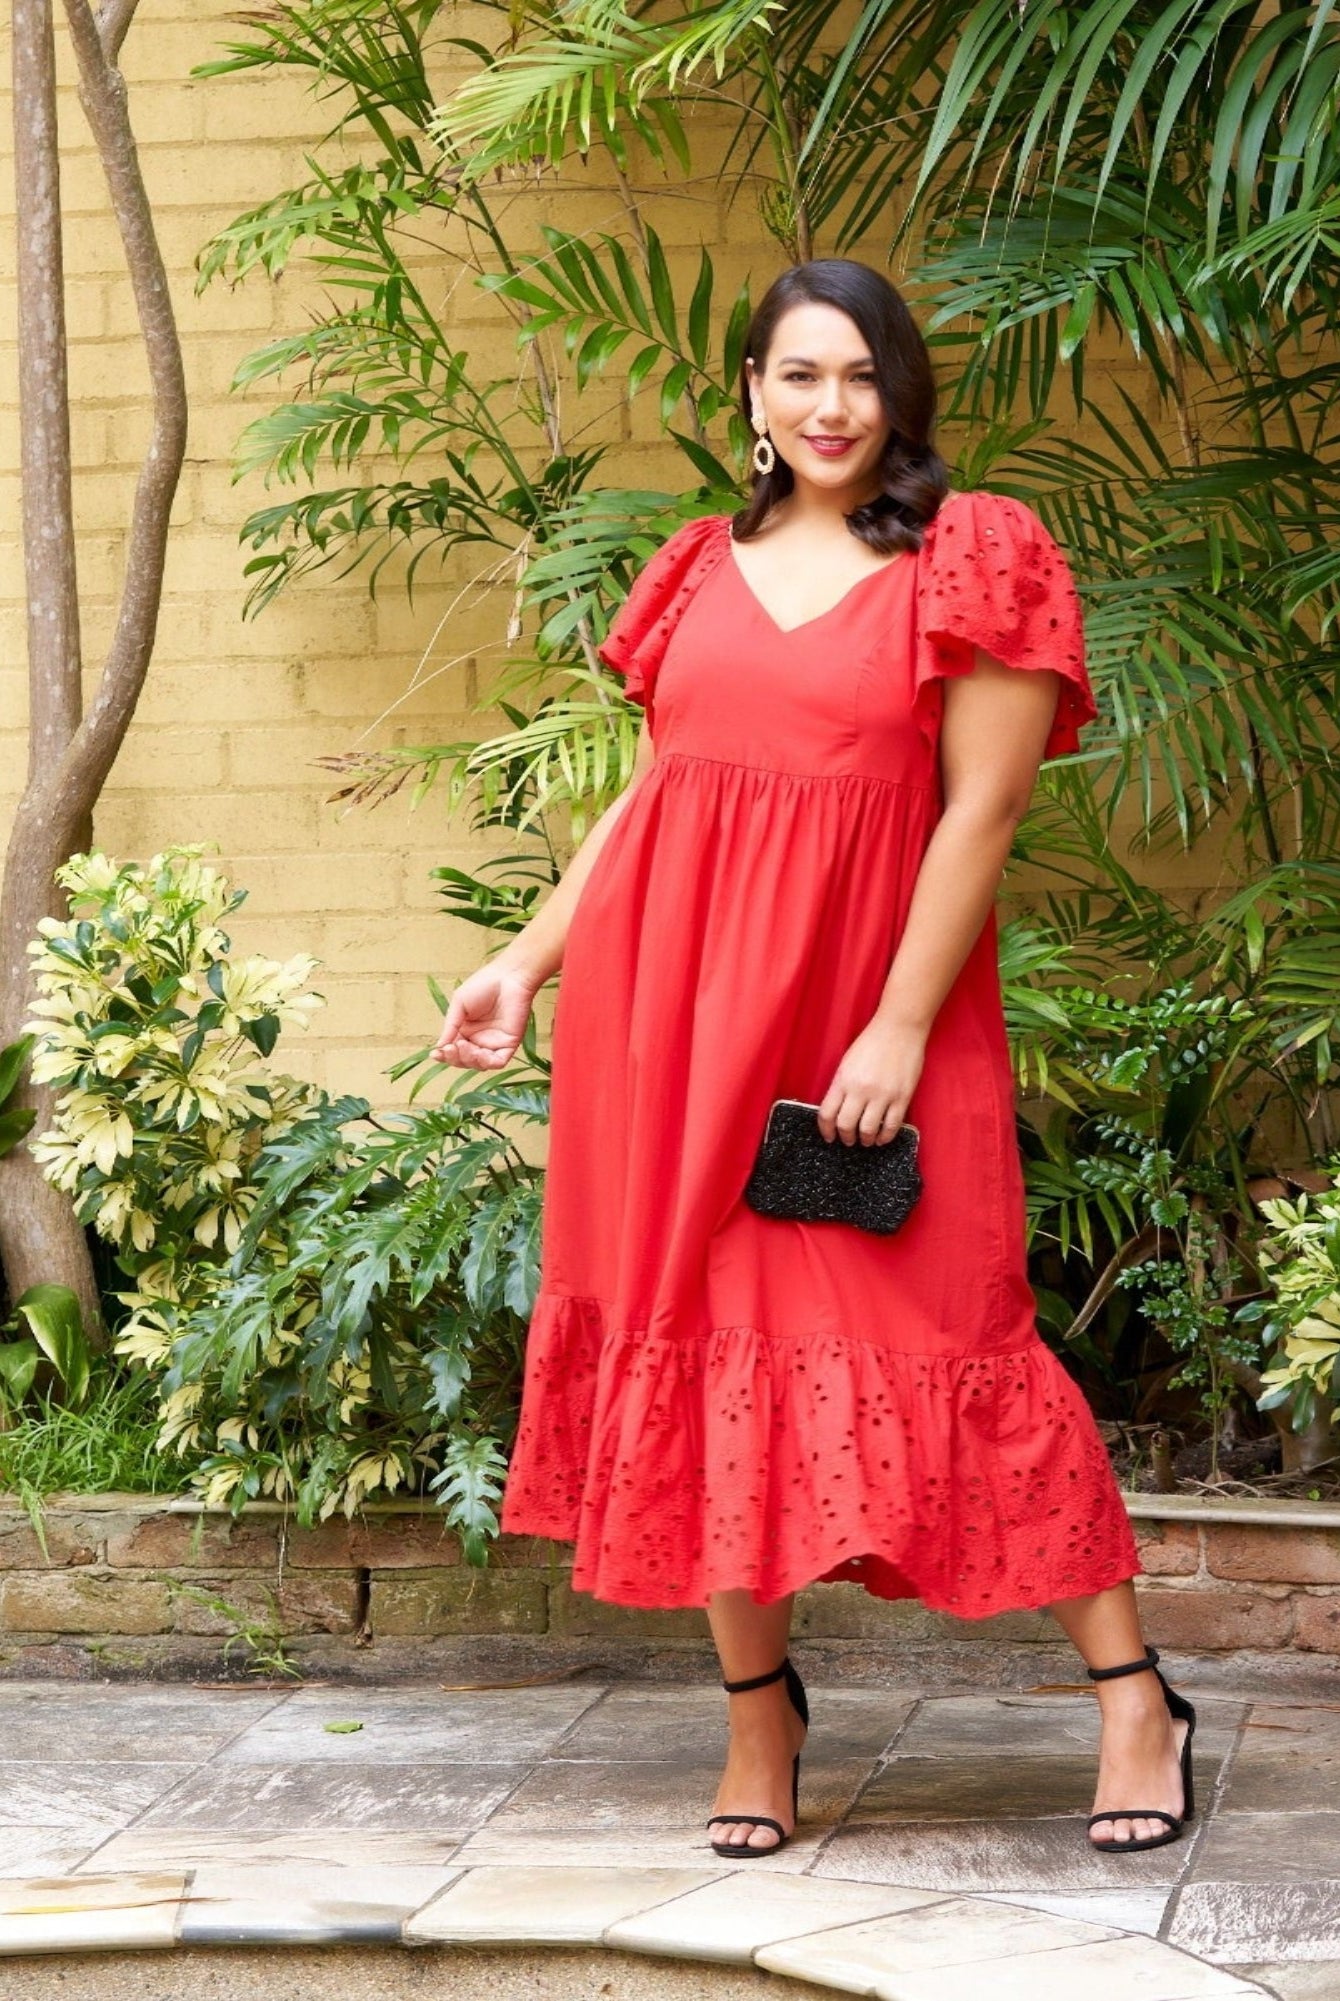 Model wearing red dress in tropical garden